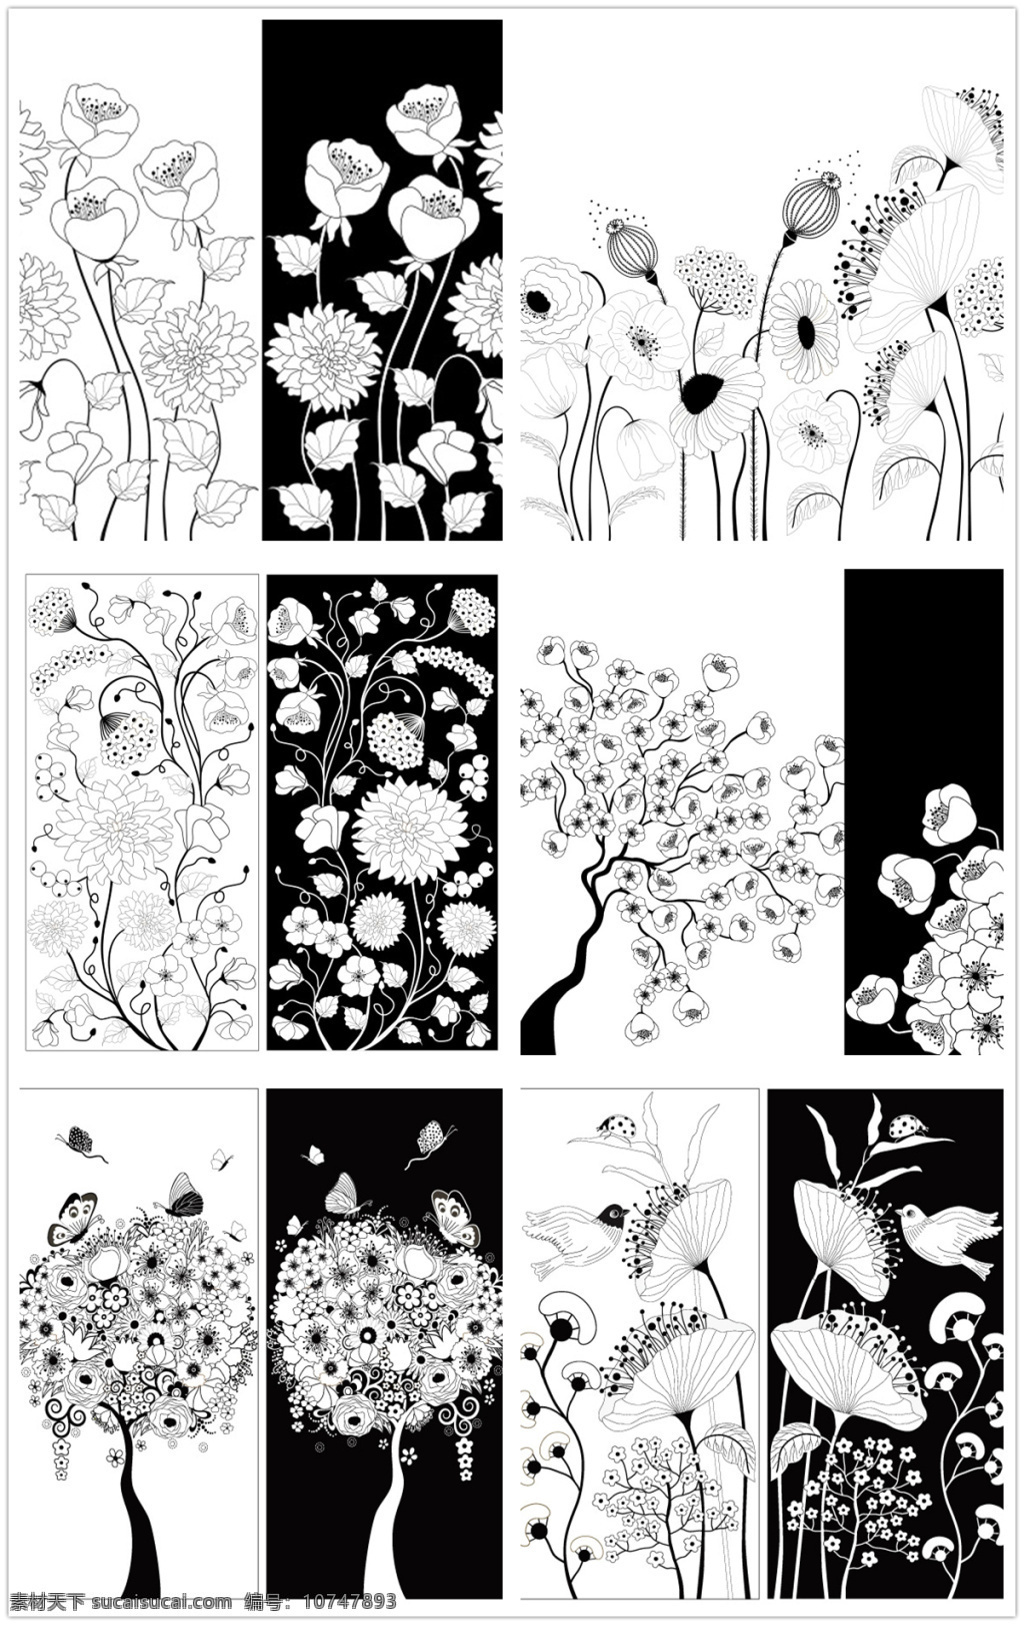 黑白 花朵 装饰 矢量 黑白花朵 装饰画 卡通植物 花瓣 美丽鲜花 漂亮花朵 花卉 花草树木 矢量花朵 生物世界 矢量素材 白色